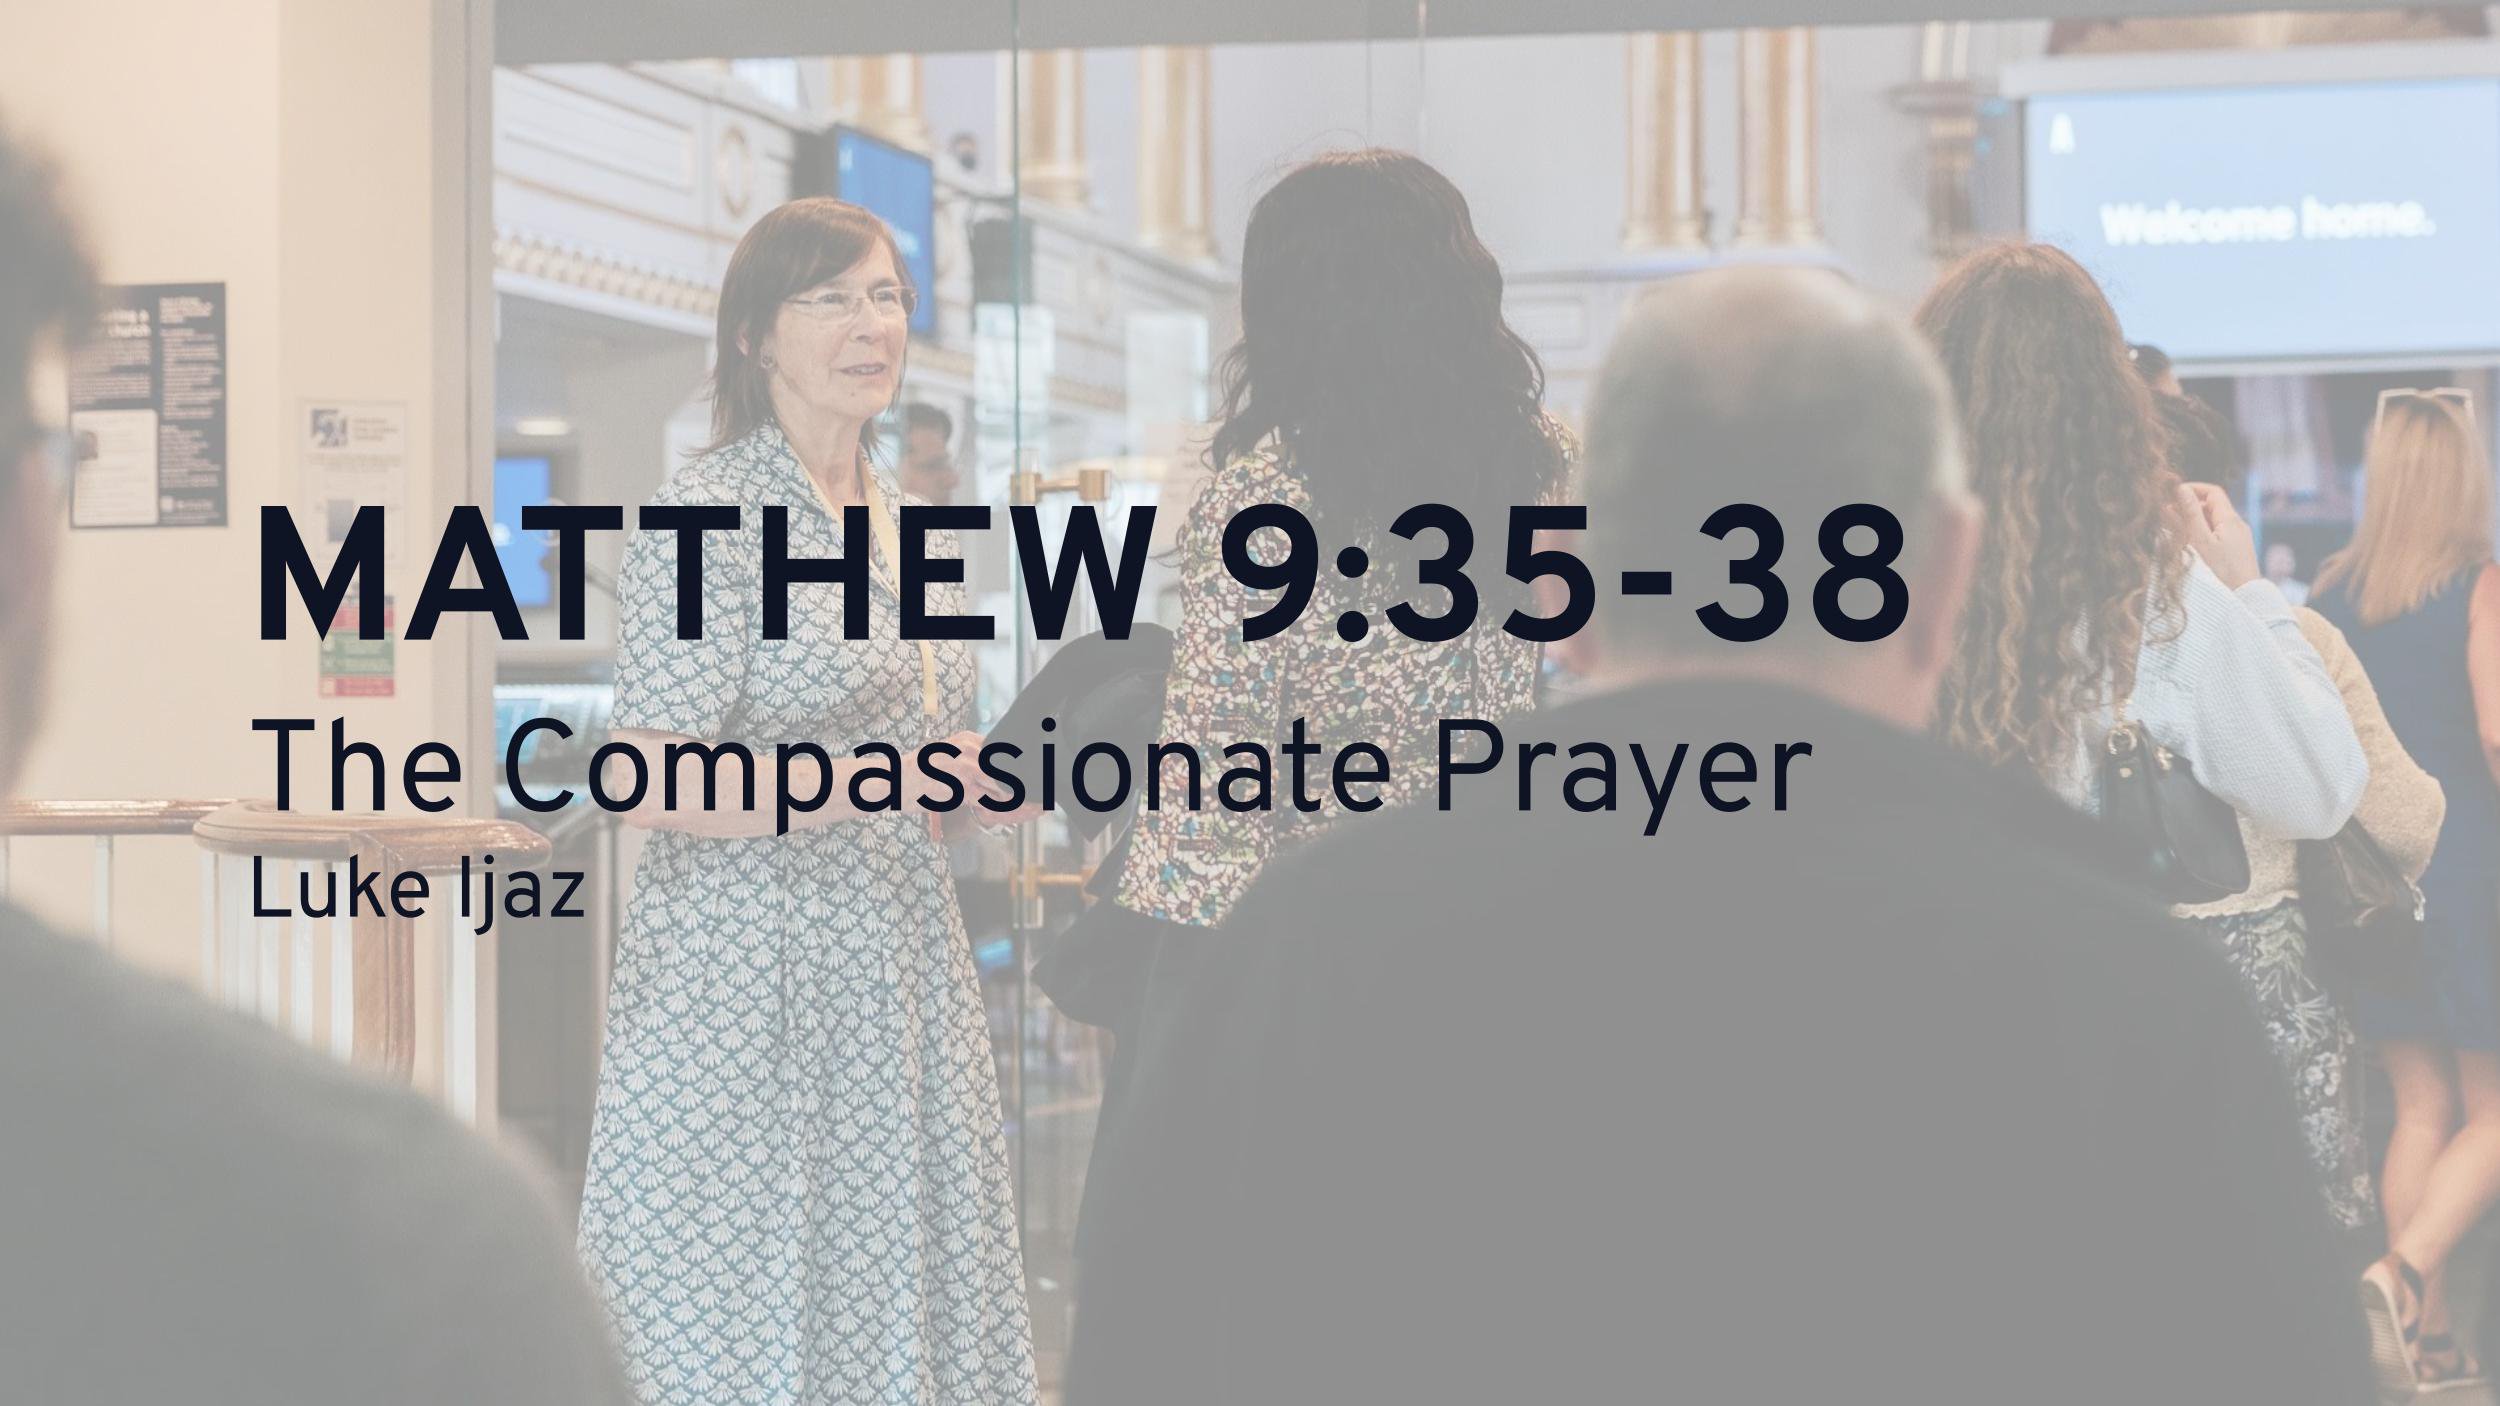 The Compassionate Prayer